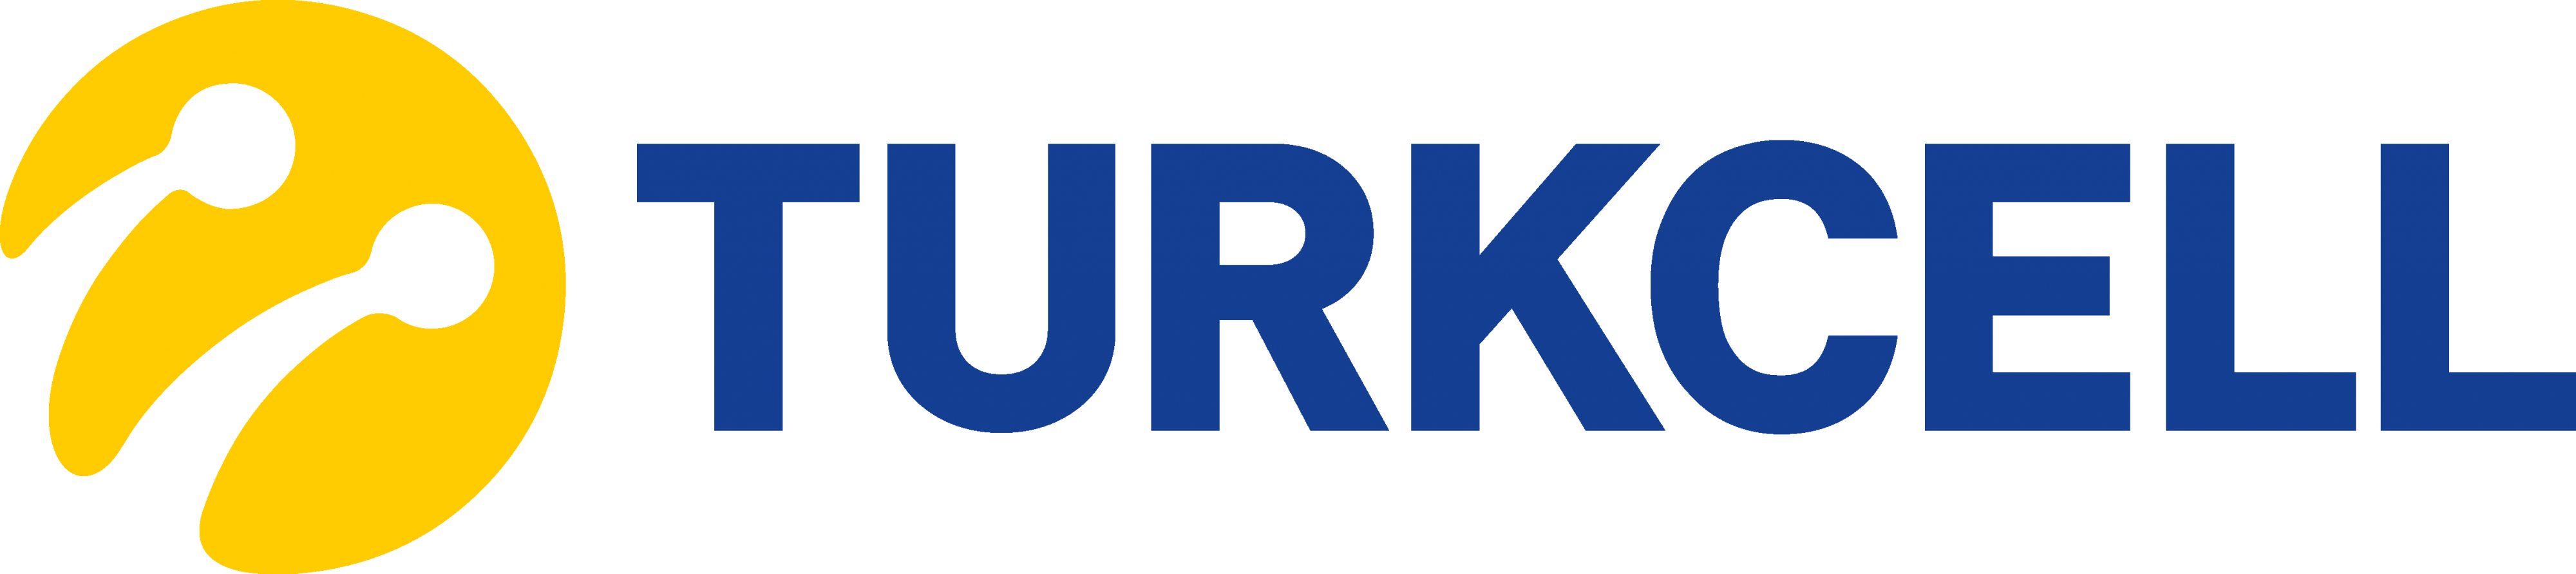 Türkcel